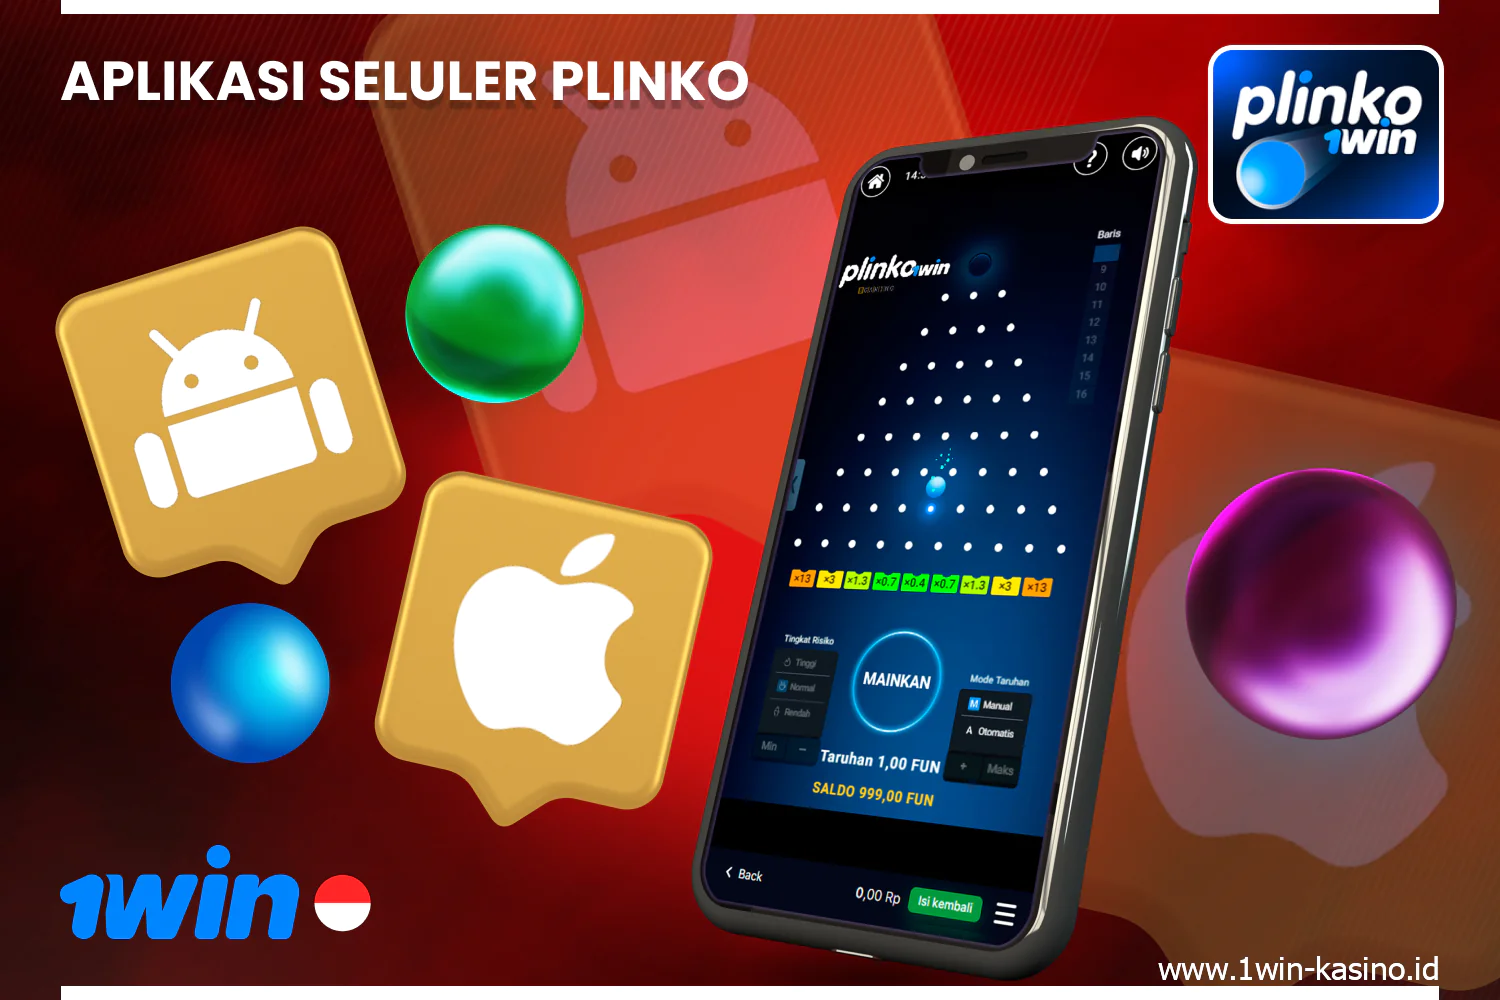 Untuk memainkan 1win Plinko, Anda dapat mengunduh aplikasi gratis untuk Android dan iOS